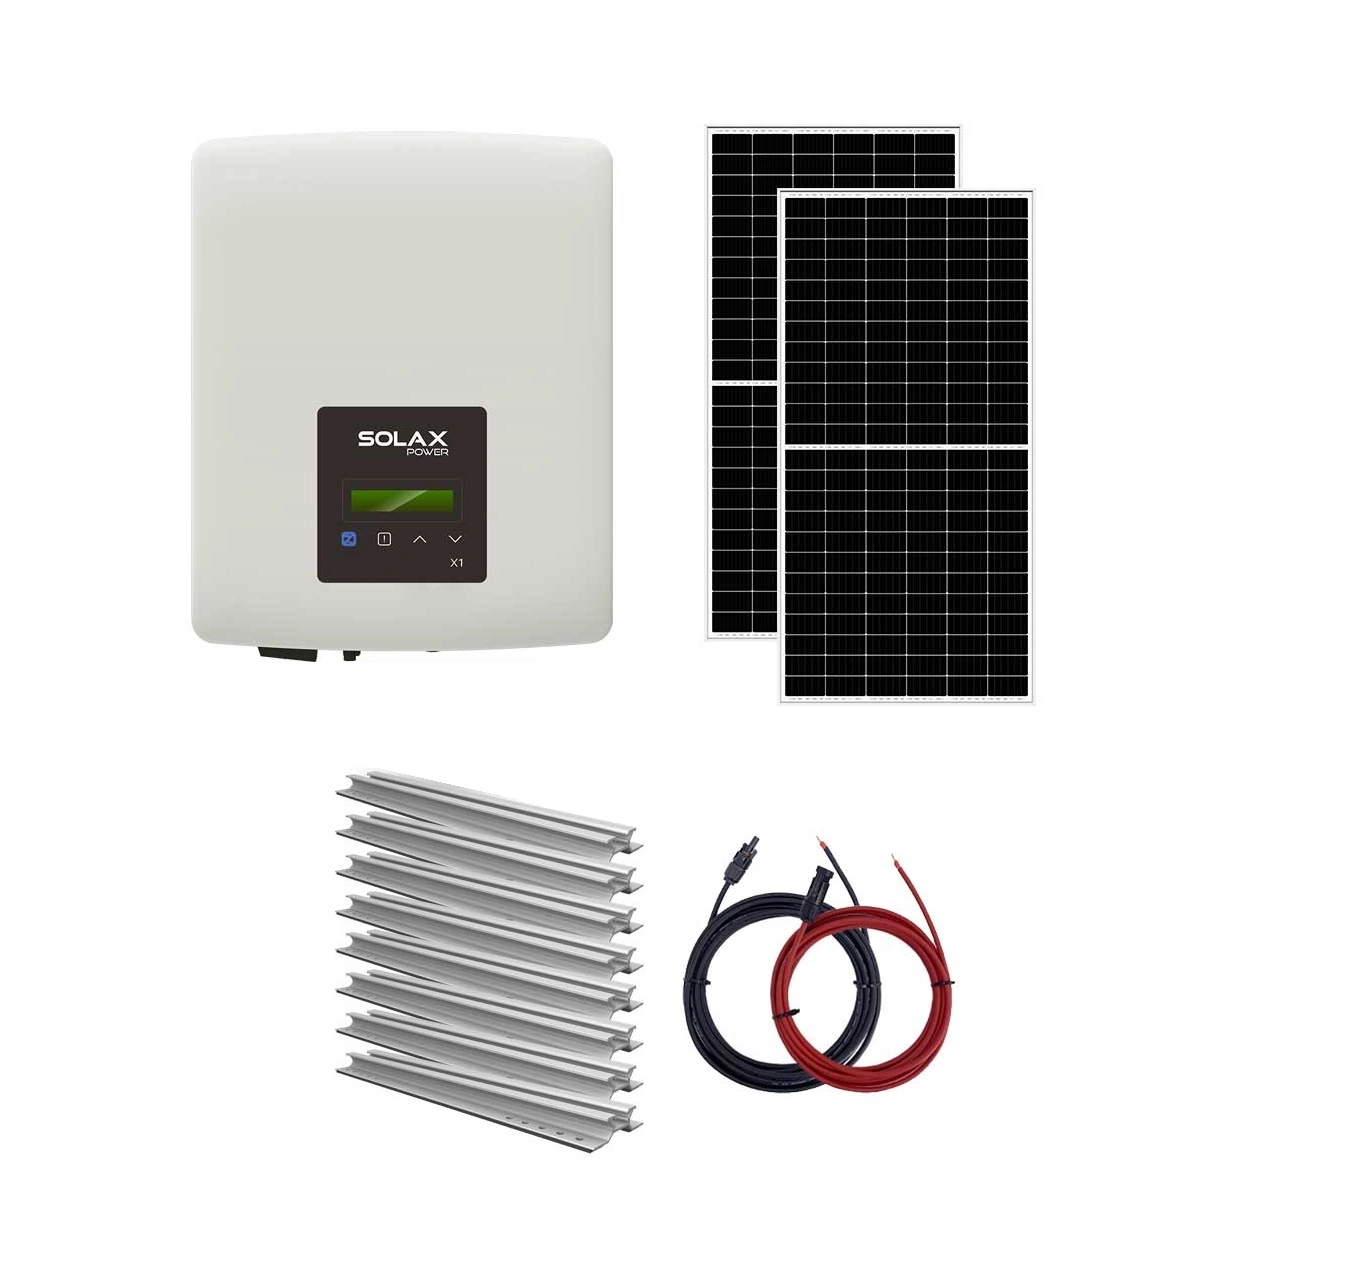 Sisteme fotovoltaice on-grid - Sistem fotovoltaic On-Grid 10 kW trifazat Solax - tigla, climasoft.ro